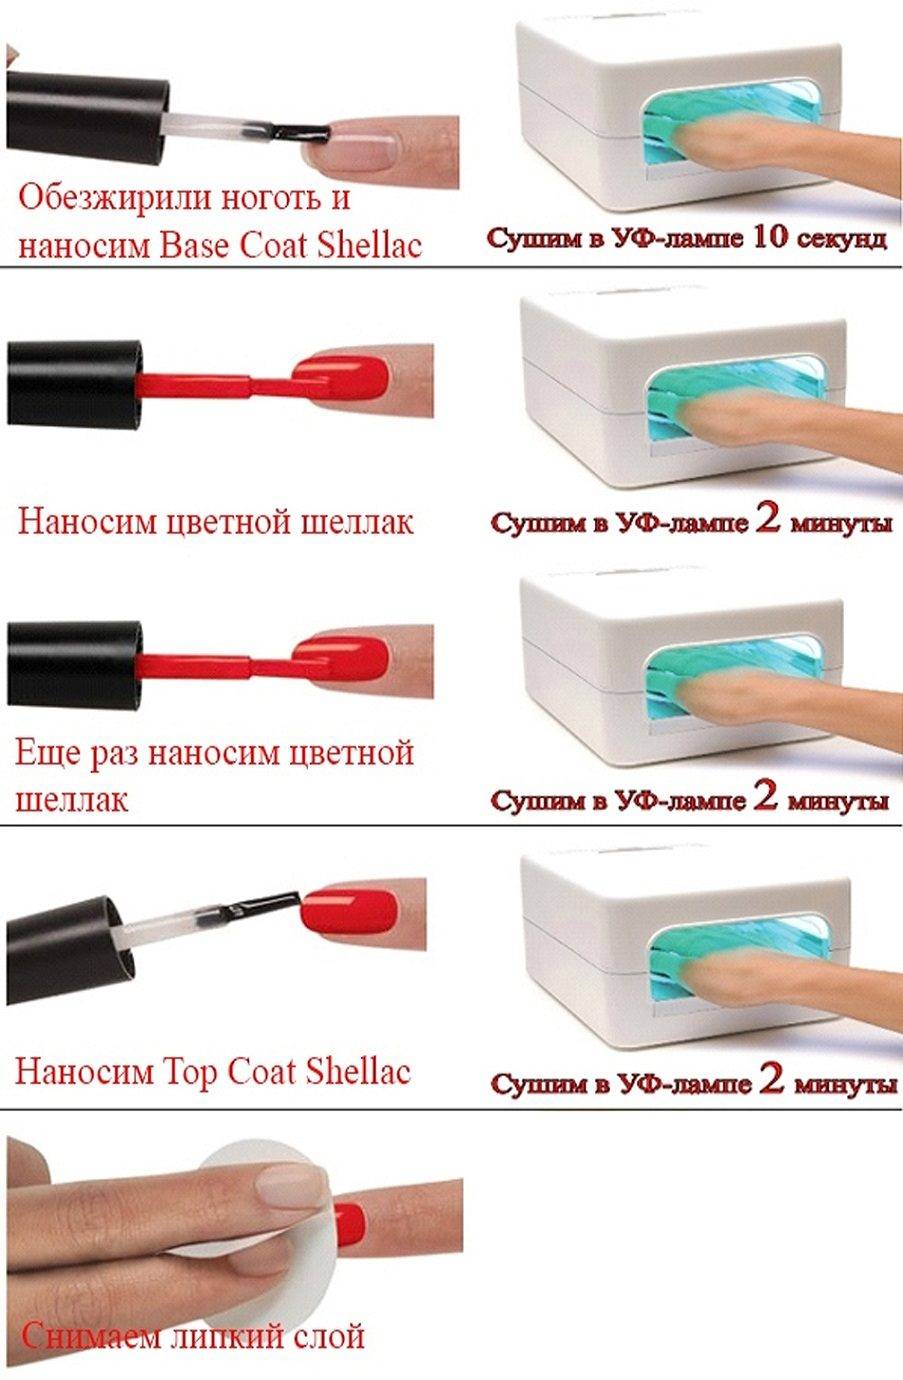 Как наносить гель лак в домашних условиях правильно | quclub.ru